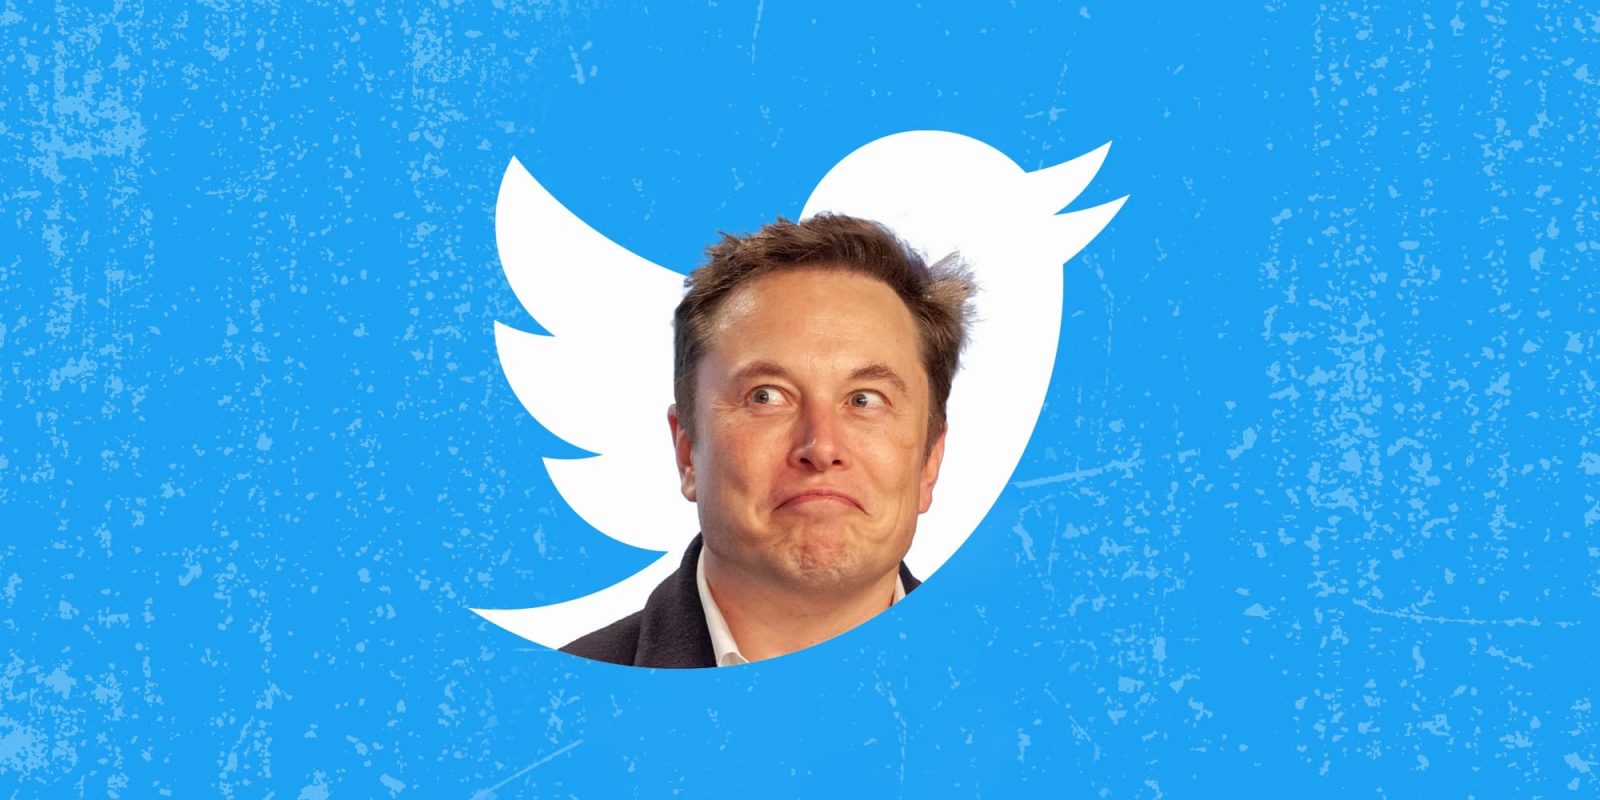 Elon Musk Twitter CEO